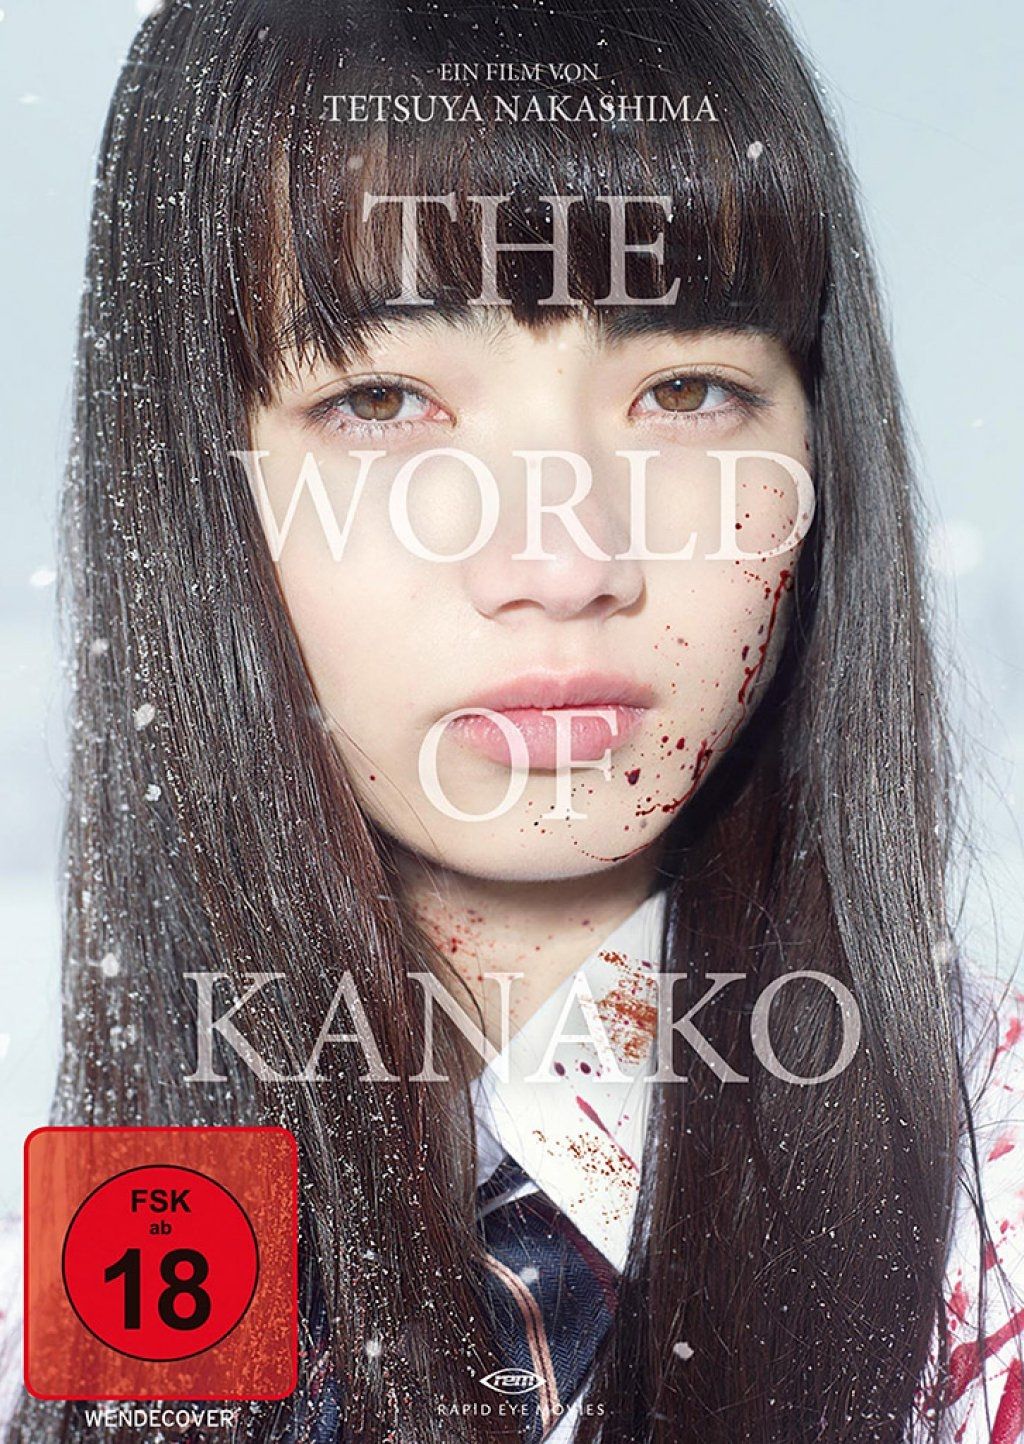 World of Kanako, The